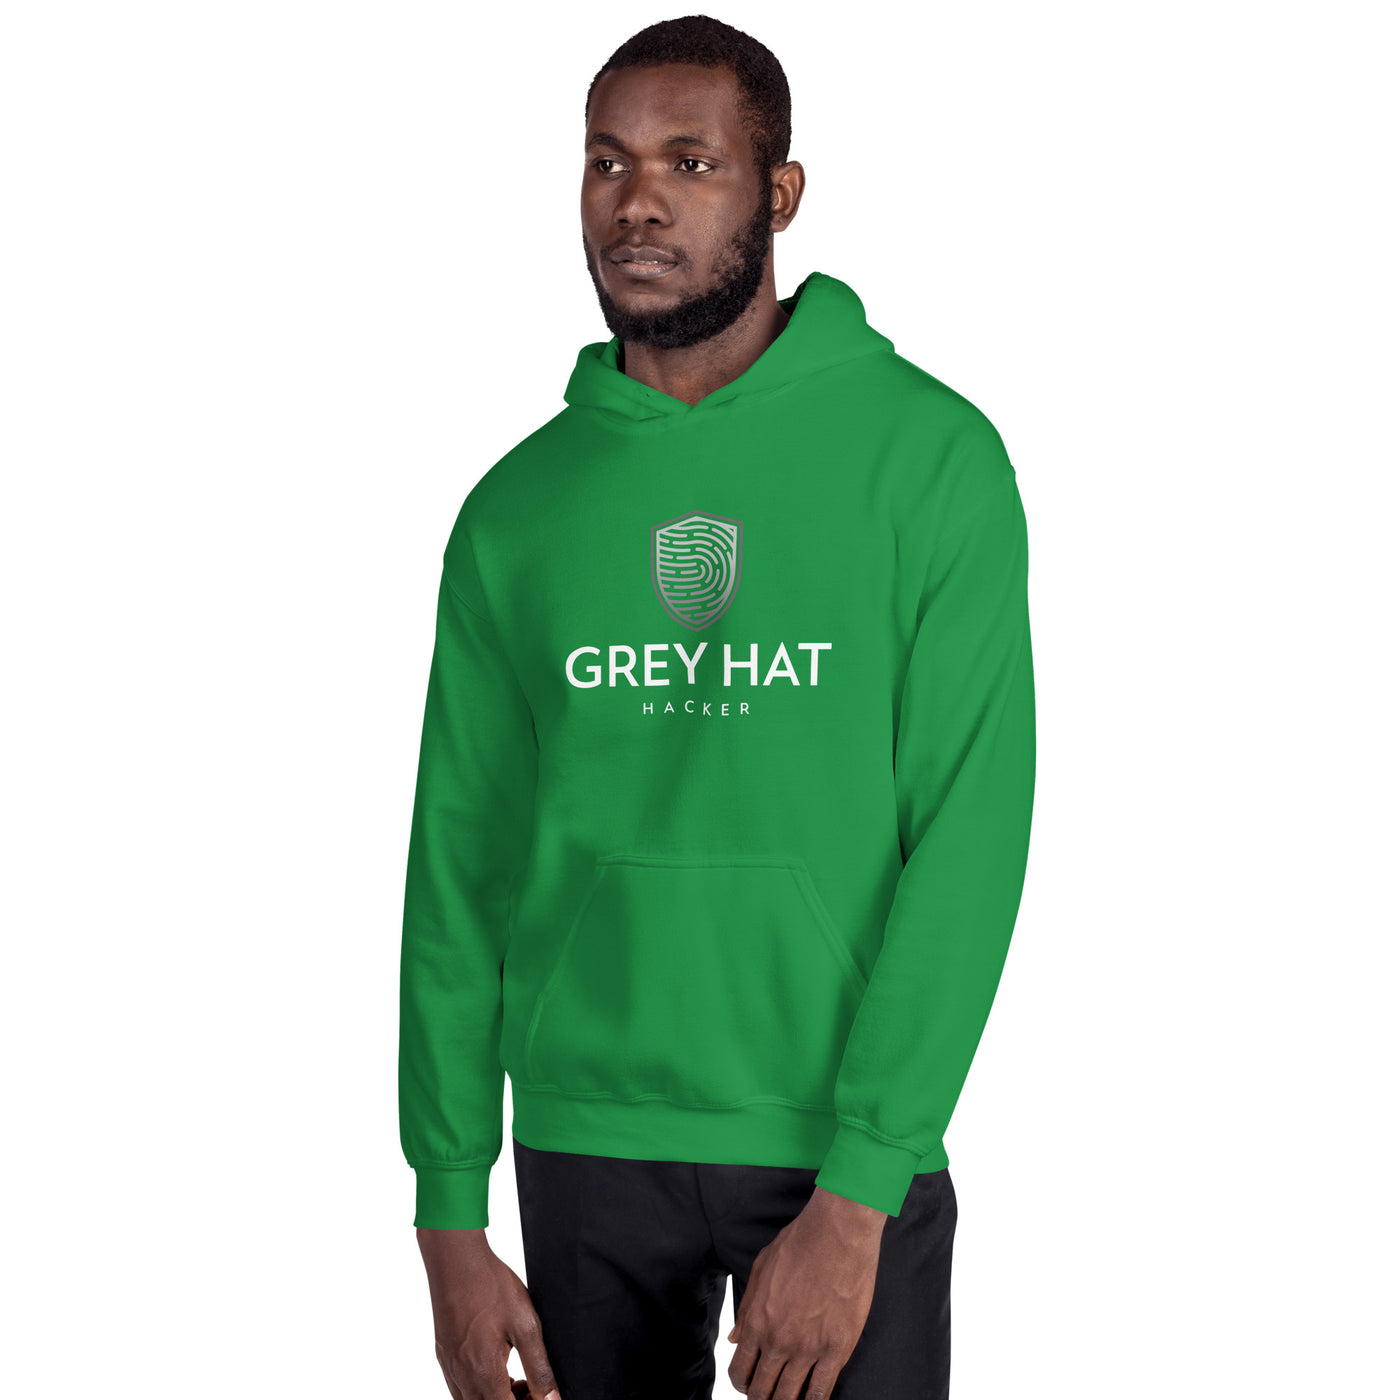 Grey Hat Hacker - Unisex Hoodie